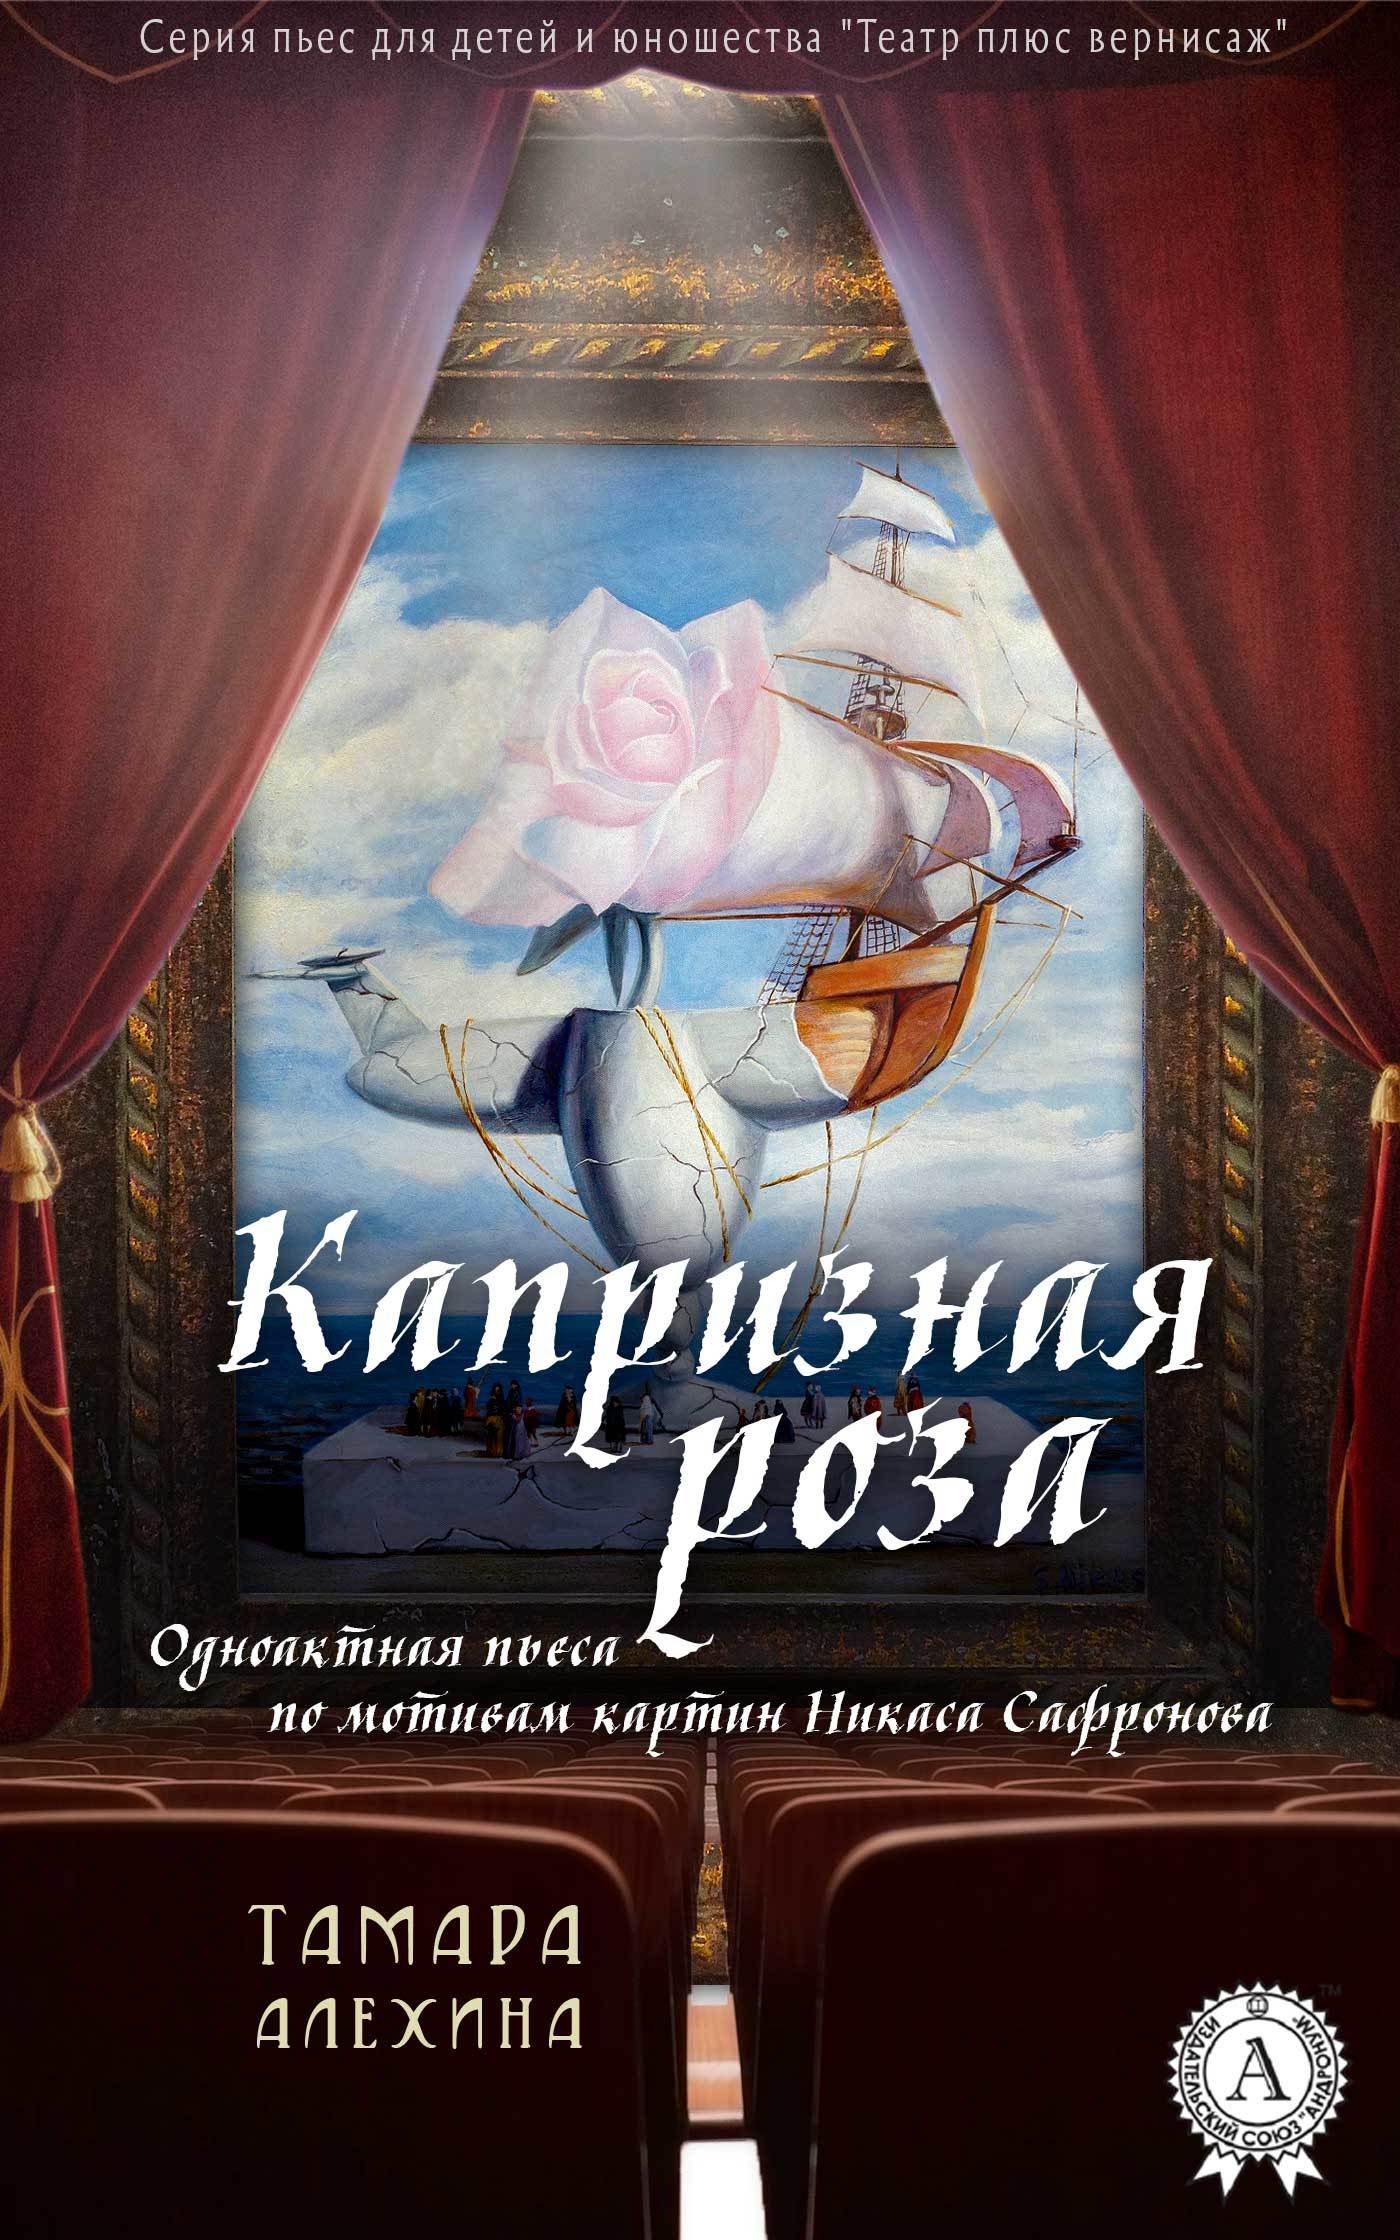 Книга Капризная роза из серии , созданная Тамара Алехина, может относится к жанру Драматургия, Изобразительное искусство, фотография, Кинематограф, театр, Исторические приключения. Стоимость книги Капризная роза  с идентификатором 33173017 составляет 149.00 руб.